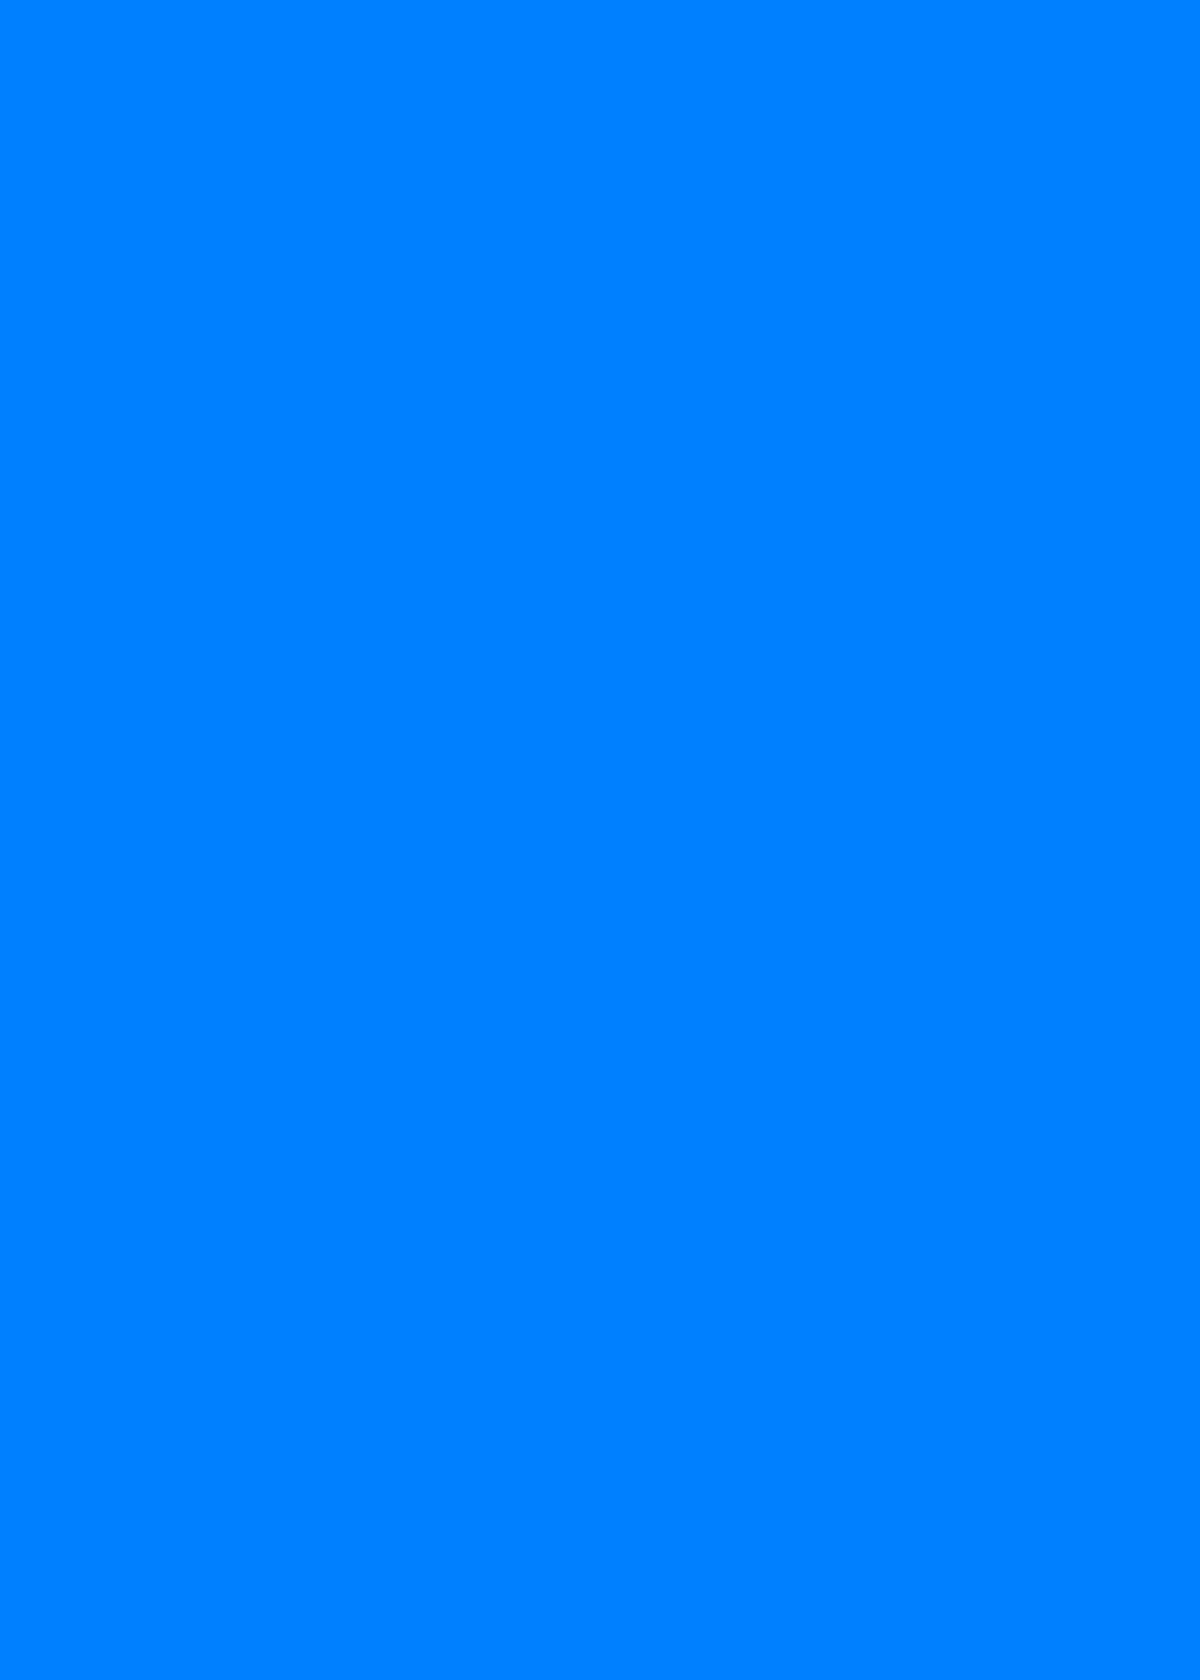 深蓝色 纯色背景高清壁纸 可设置聊天背景图 微博版图 原创高清